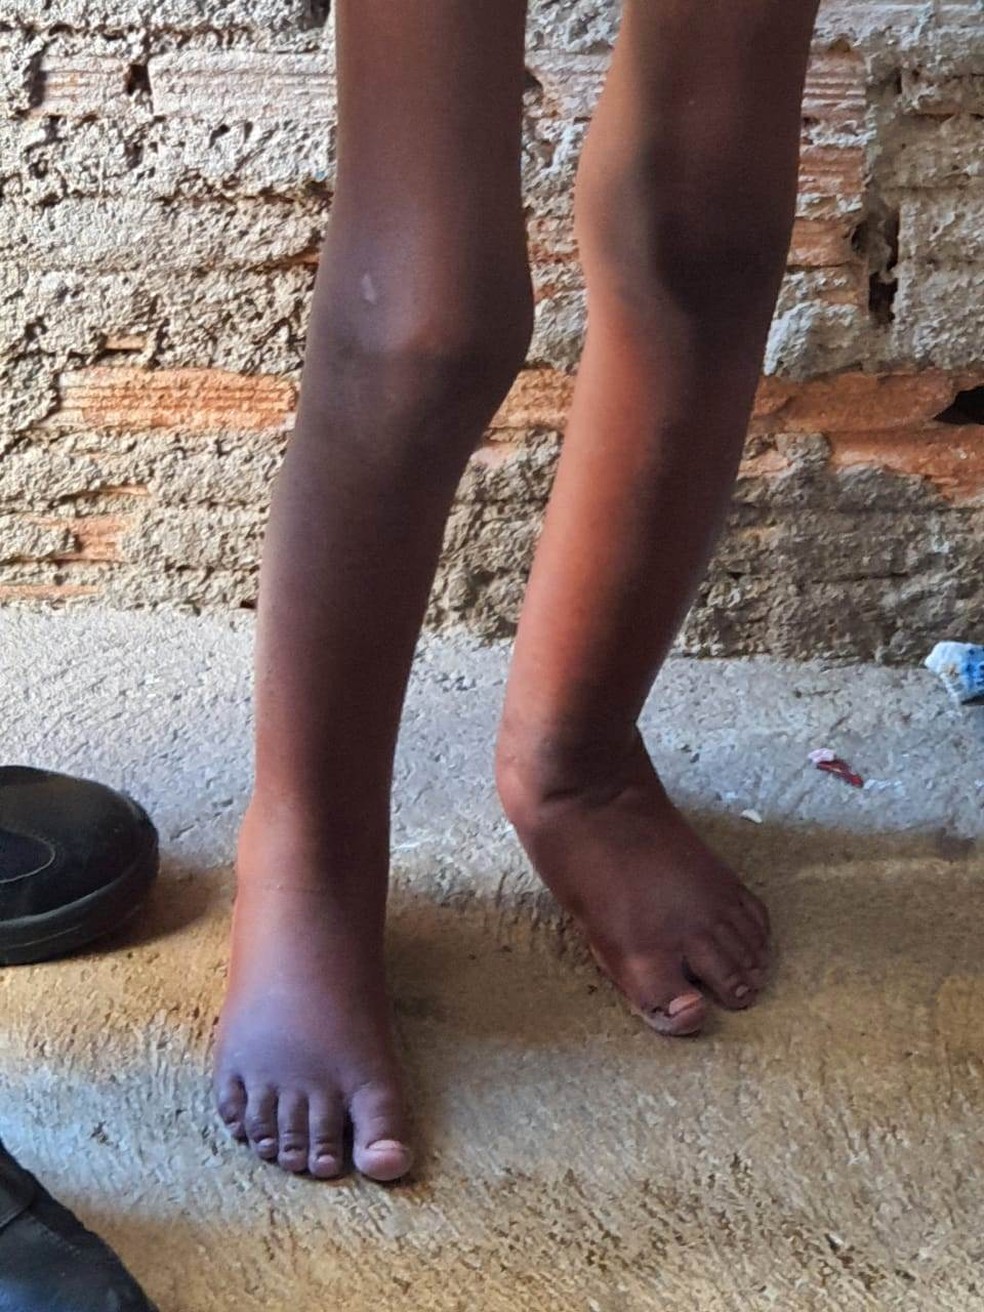 Polícia resgata menino de 11 anos torturado vivendo em barril 4